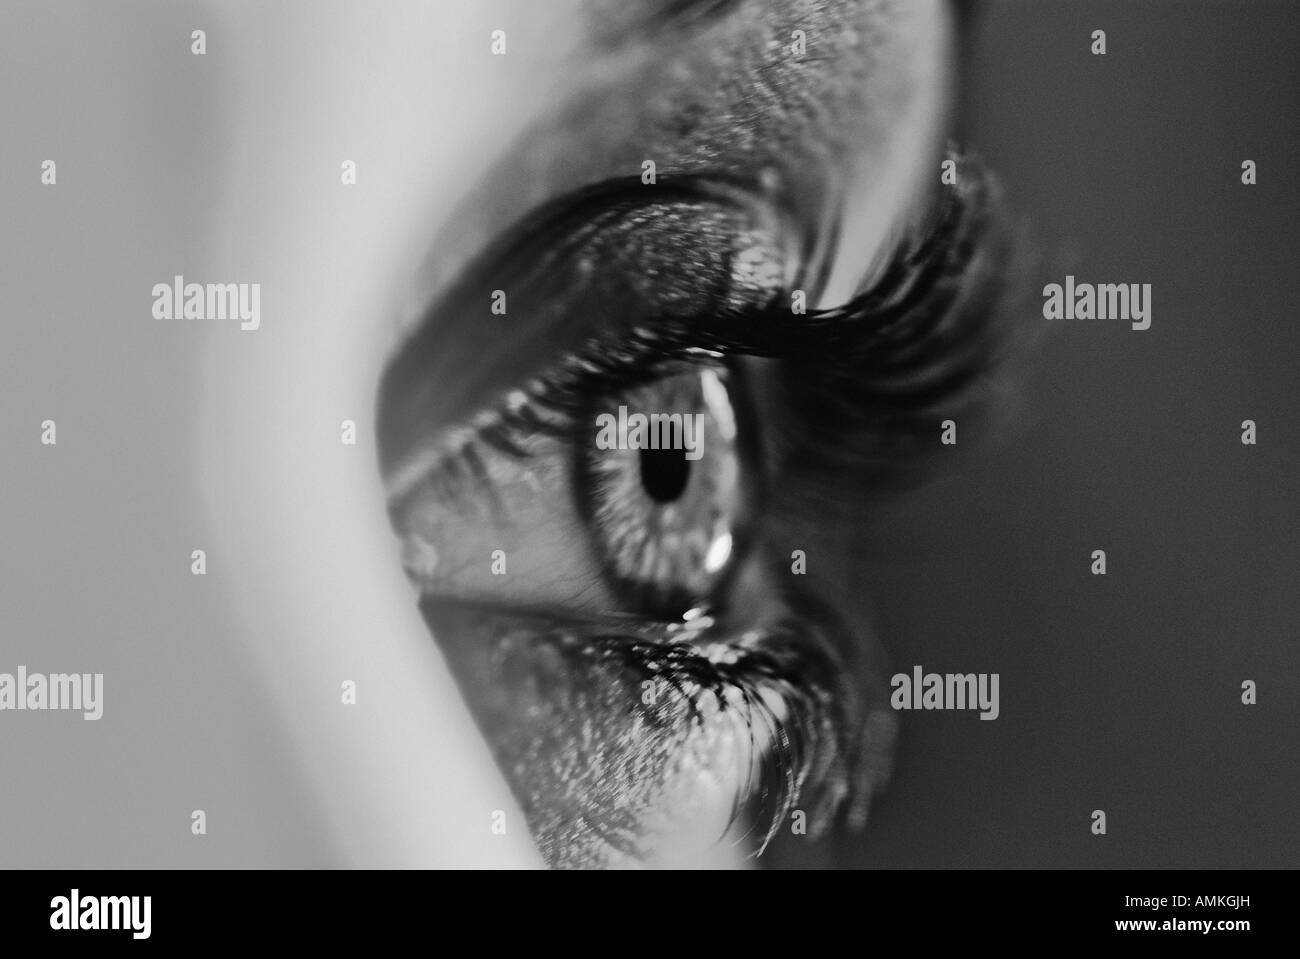 Immagine in bianco e nero di un occhio umano Foto Stock